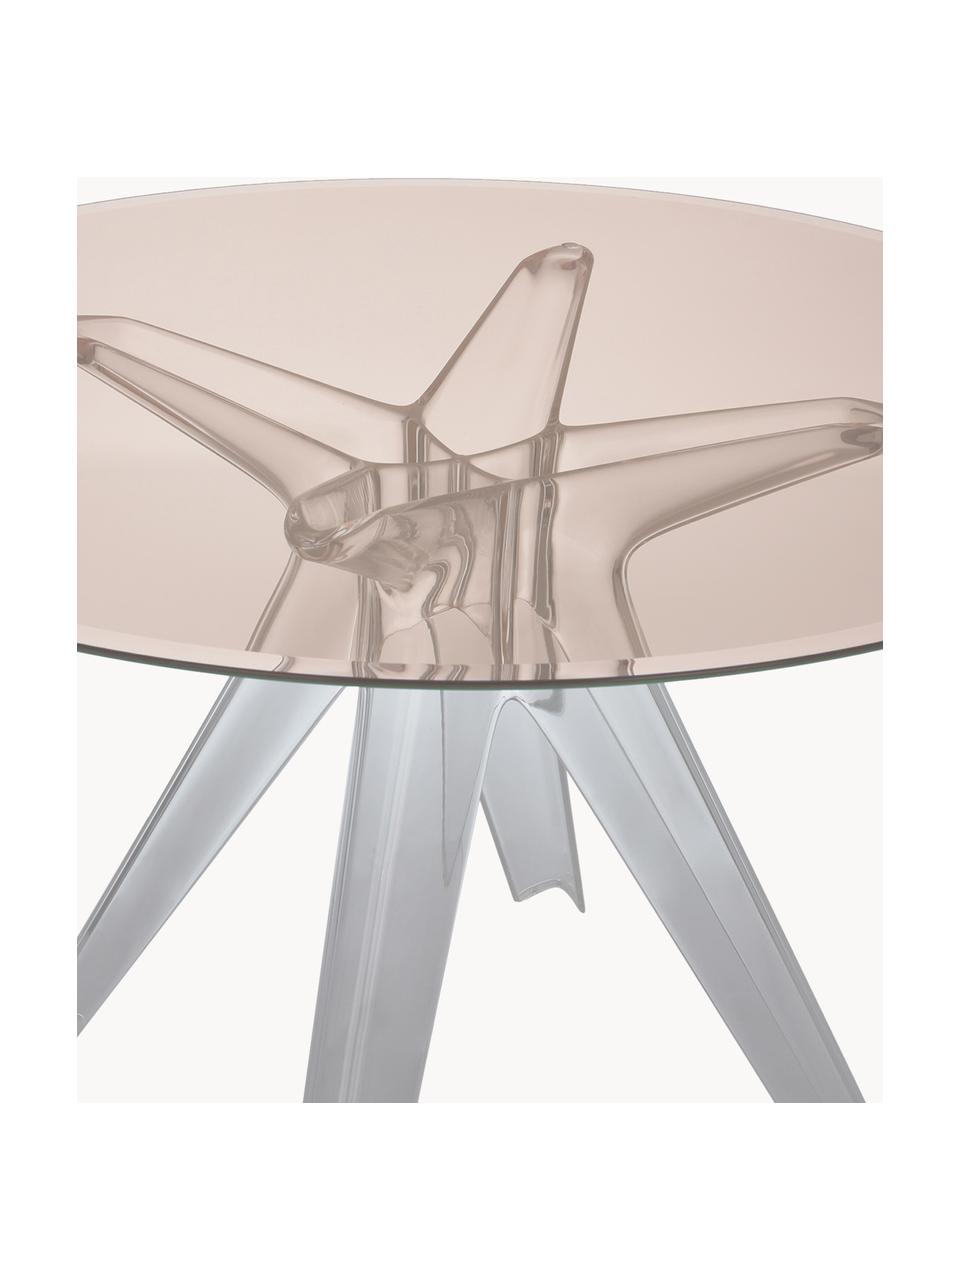 Runder Esstisch Sir Gio, Ø 120 cm, Tischplatte: Verbundglas, Gestell: Kunststoff, Beige, Transparent, Ø 120 cm